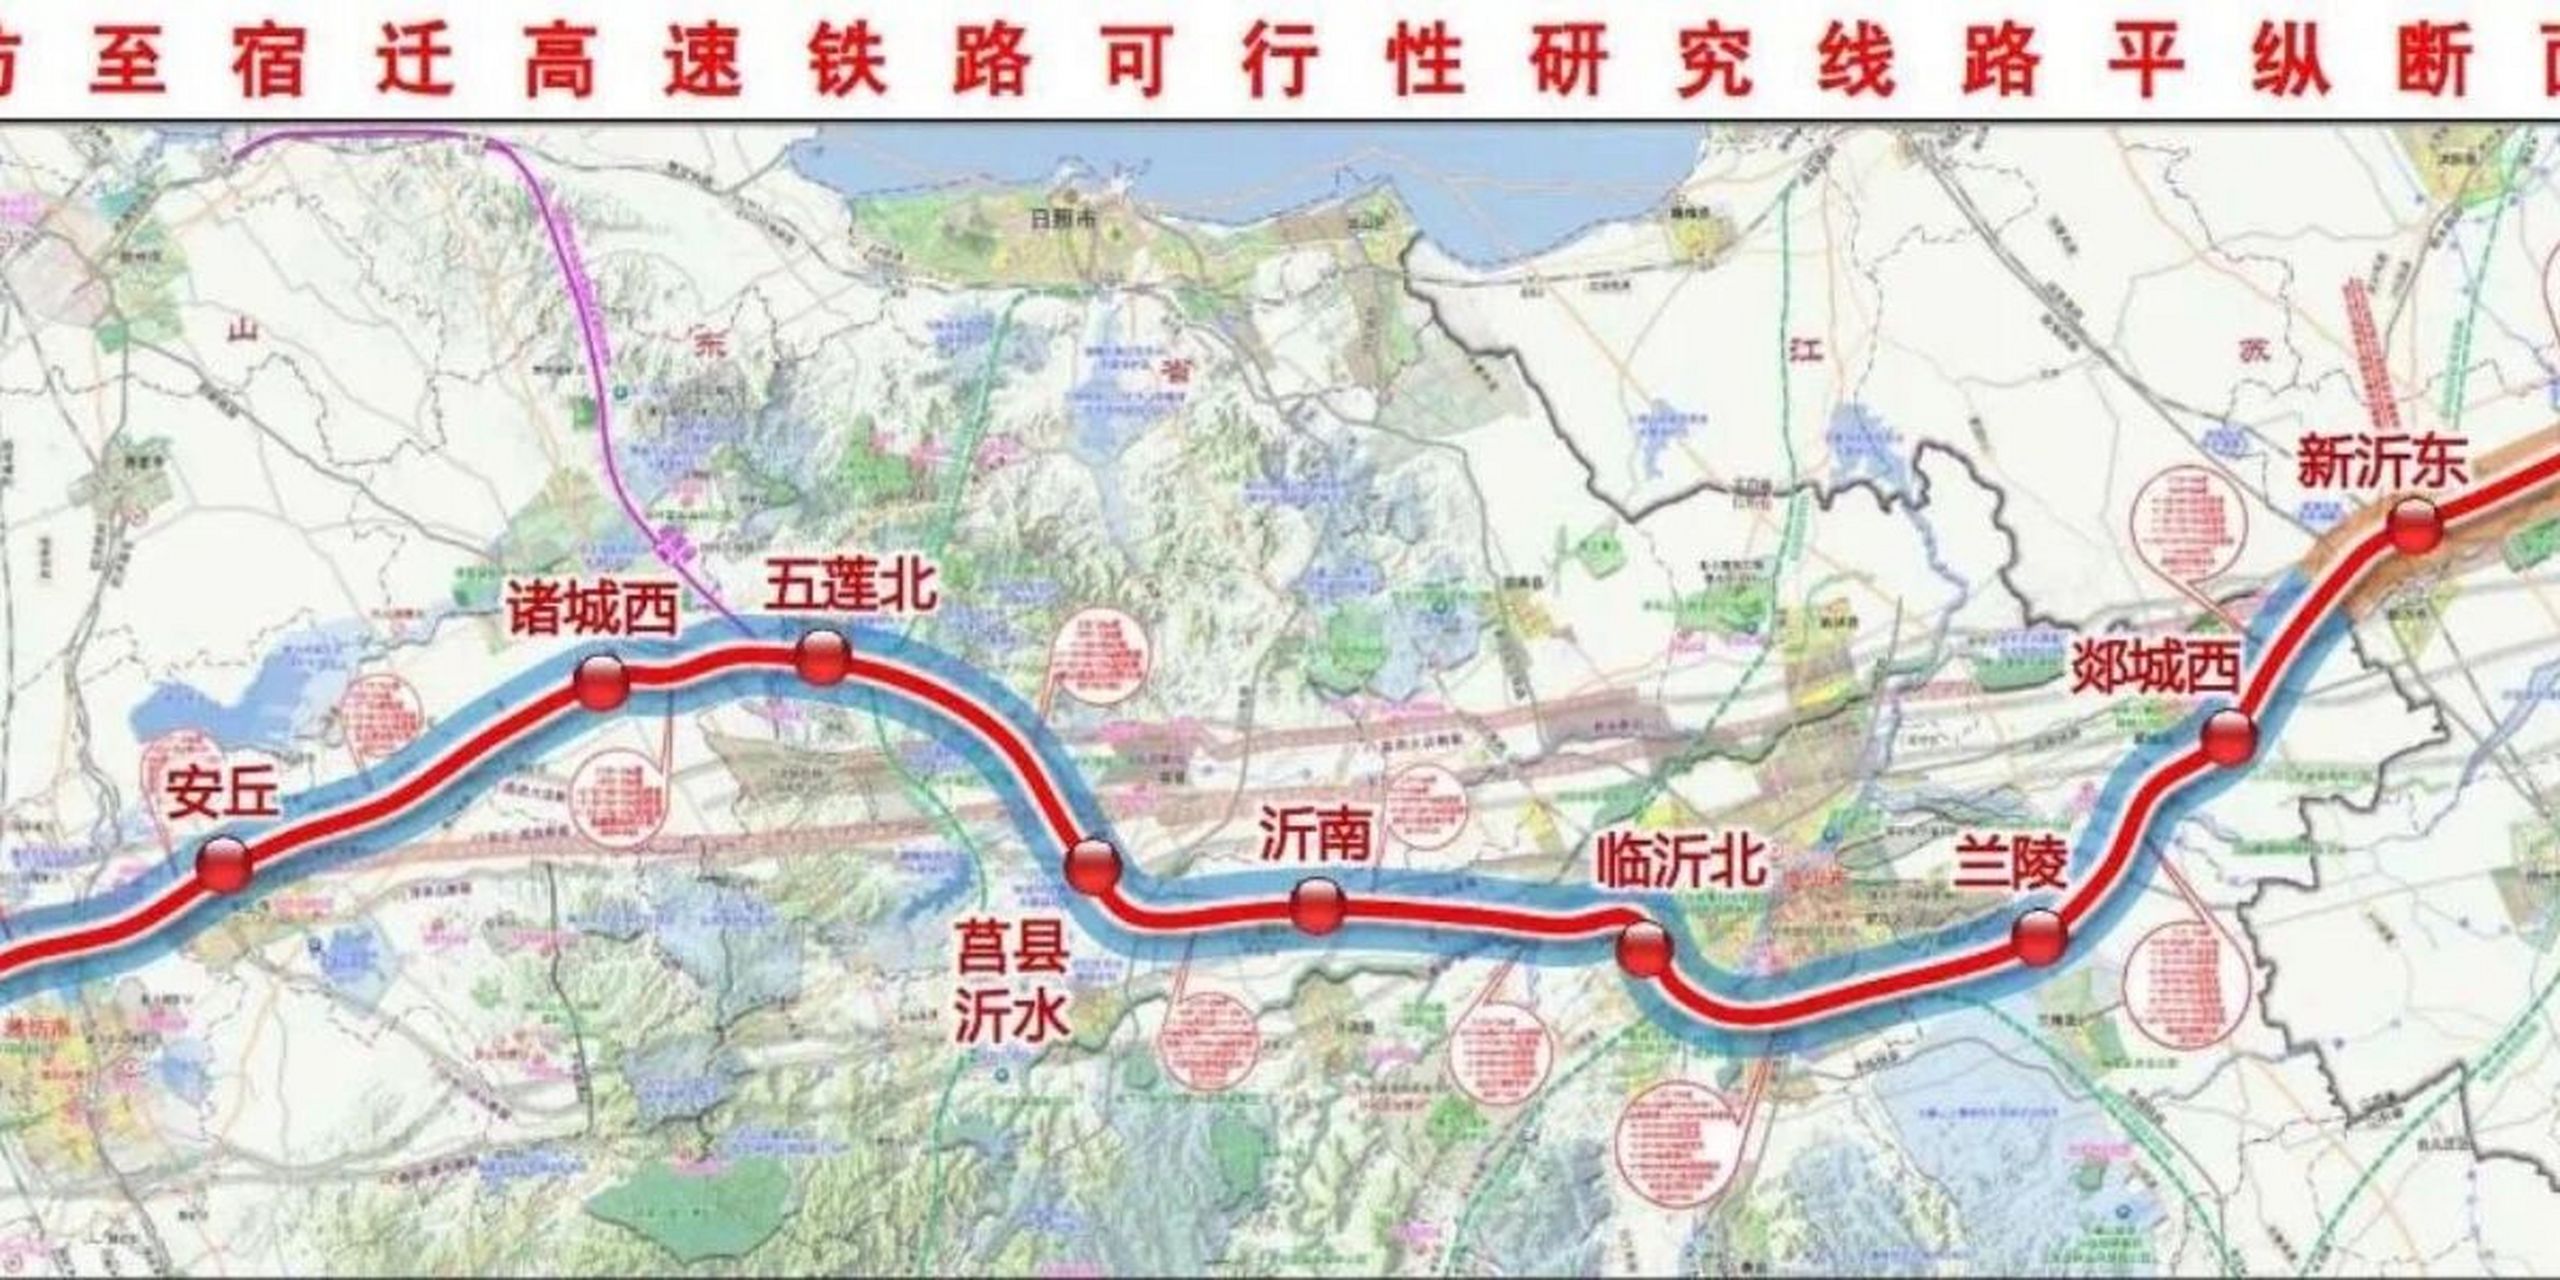 京沪二通道线路走向及车站设置方案出炉 潍宿高铁(包括青岛连接线)